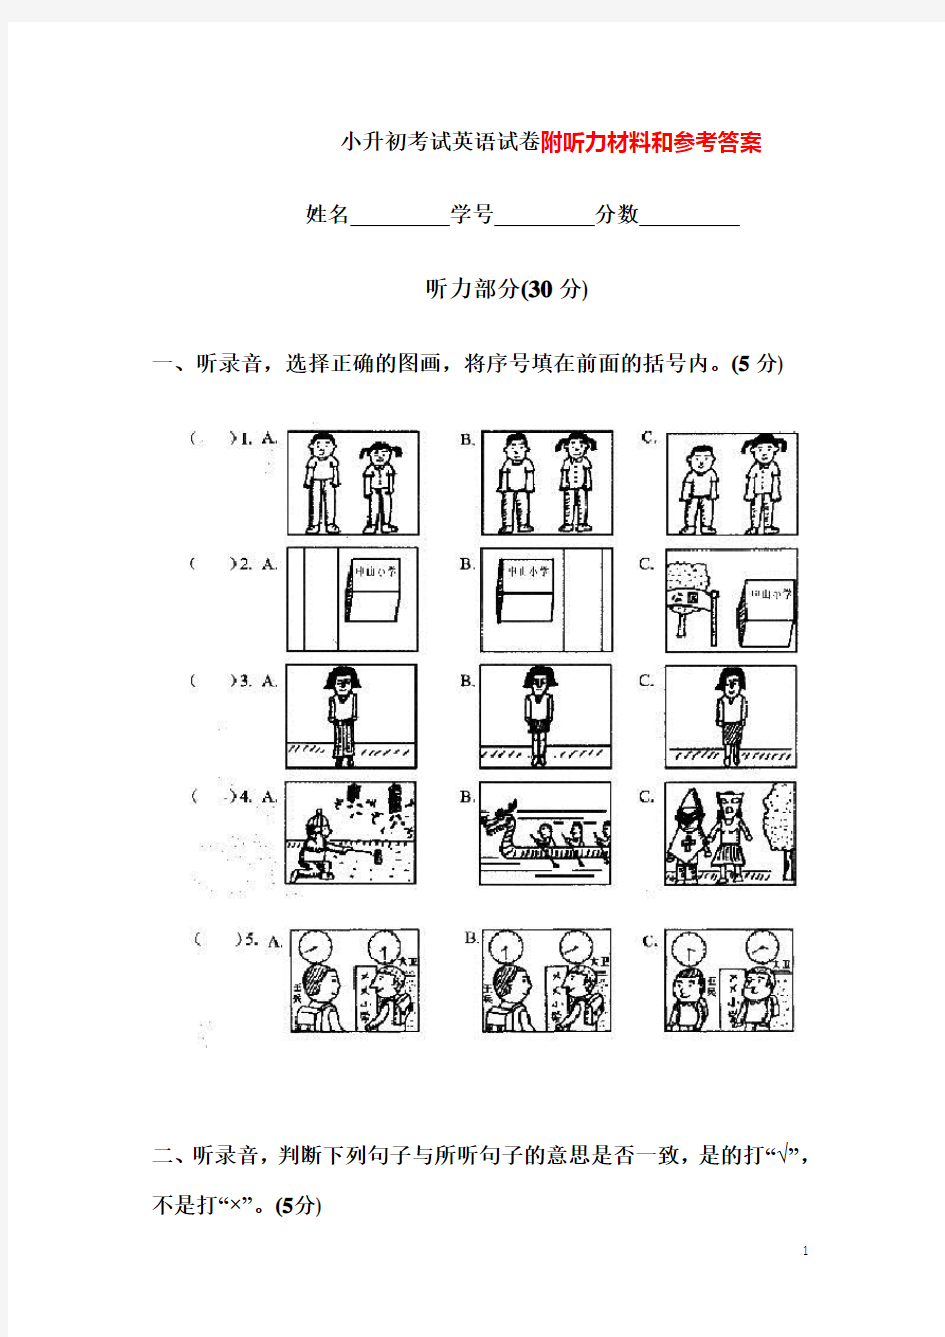 (完整)南京小升初考试英语试卷